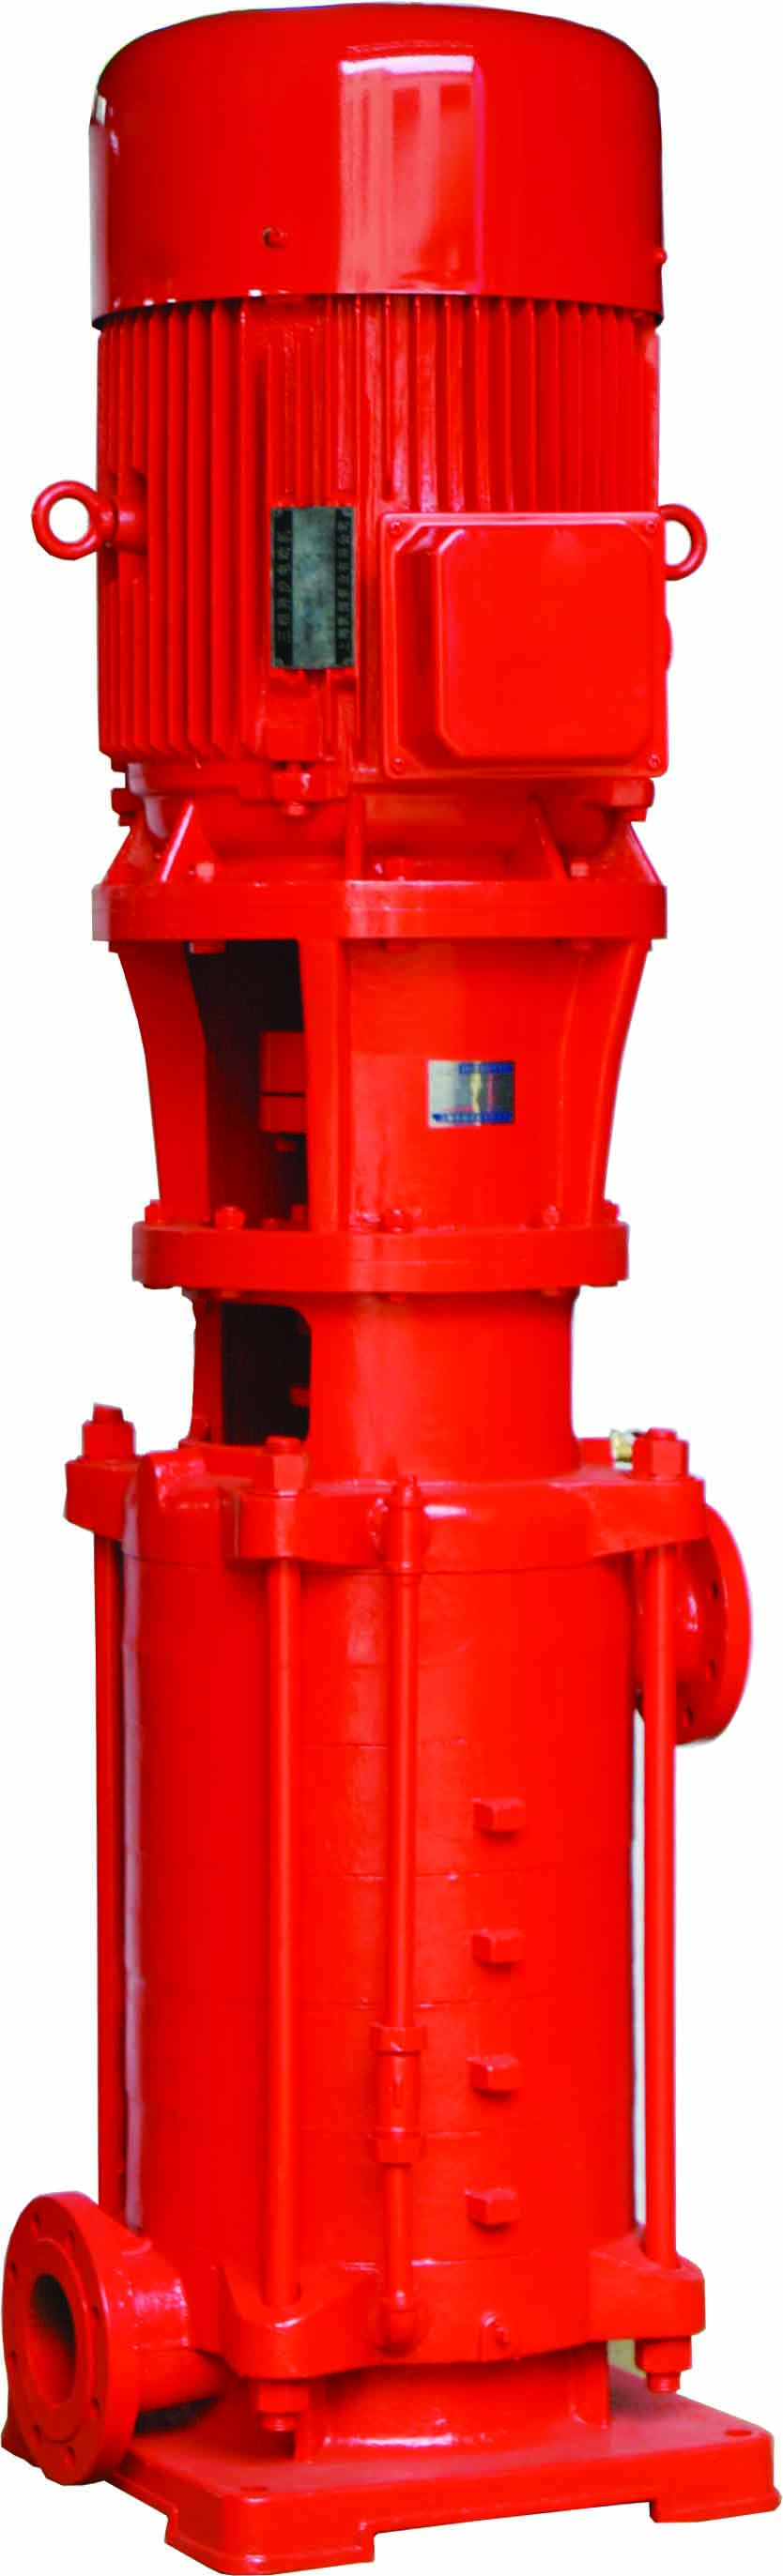 Pompa antincendio centrifuga multistadio verticale monoaspirazione XBD-DL negli impianti antincendio